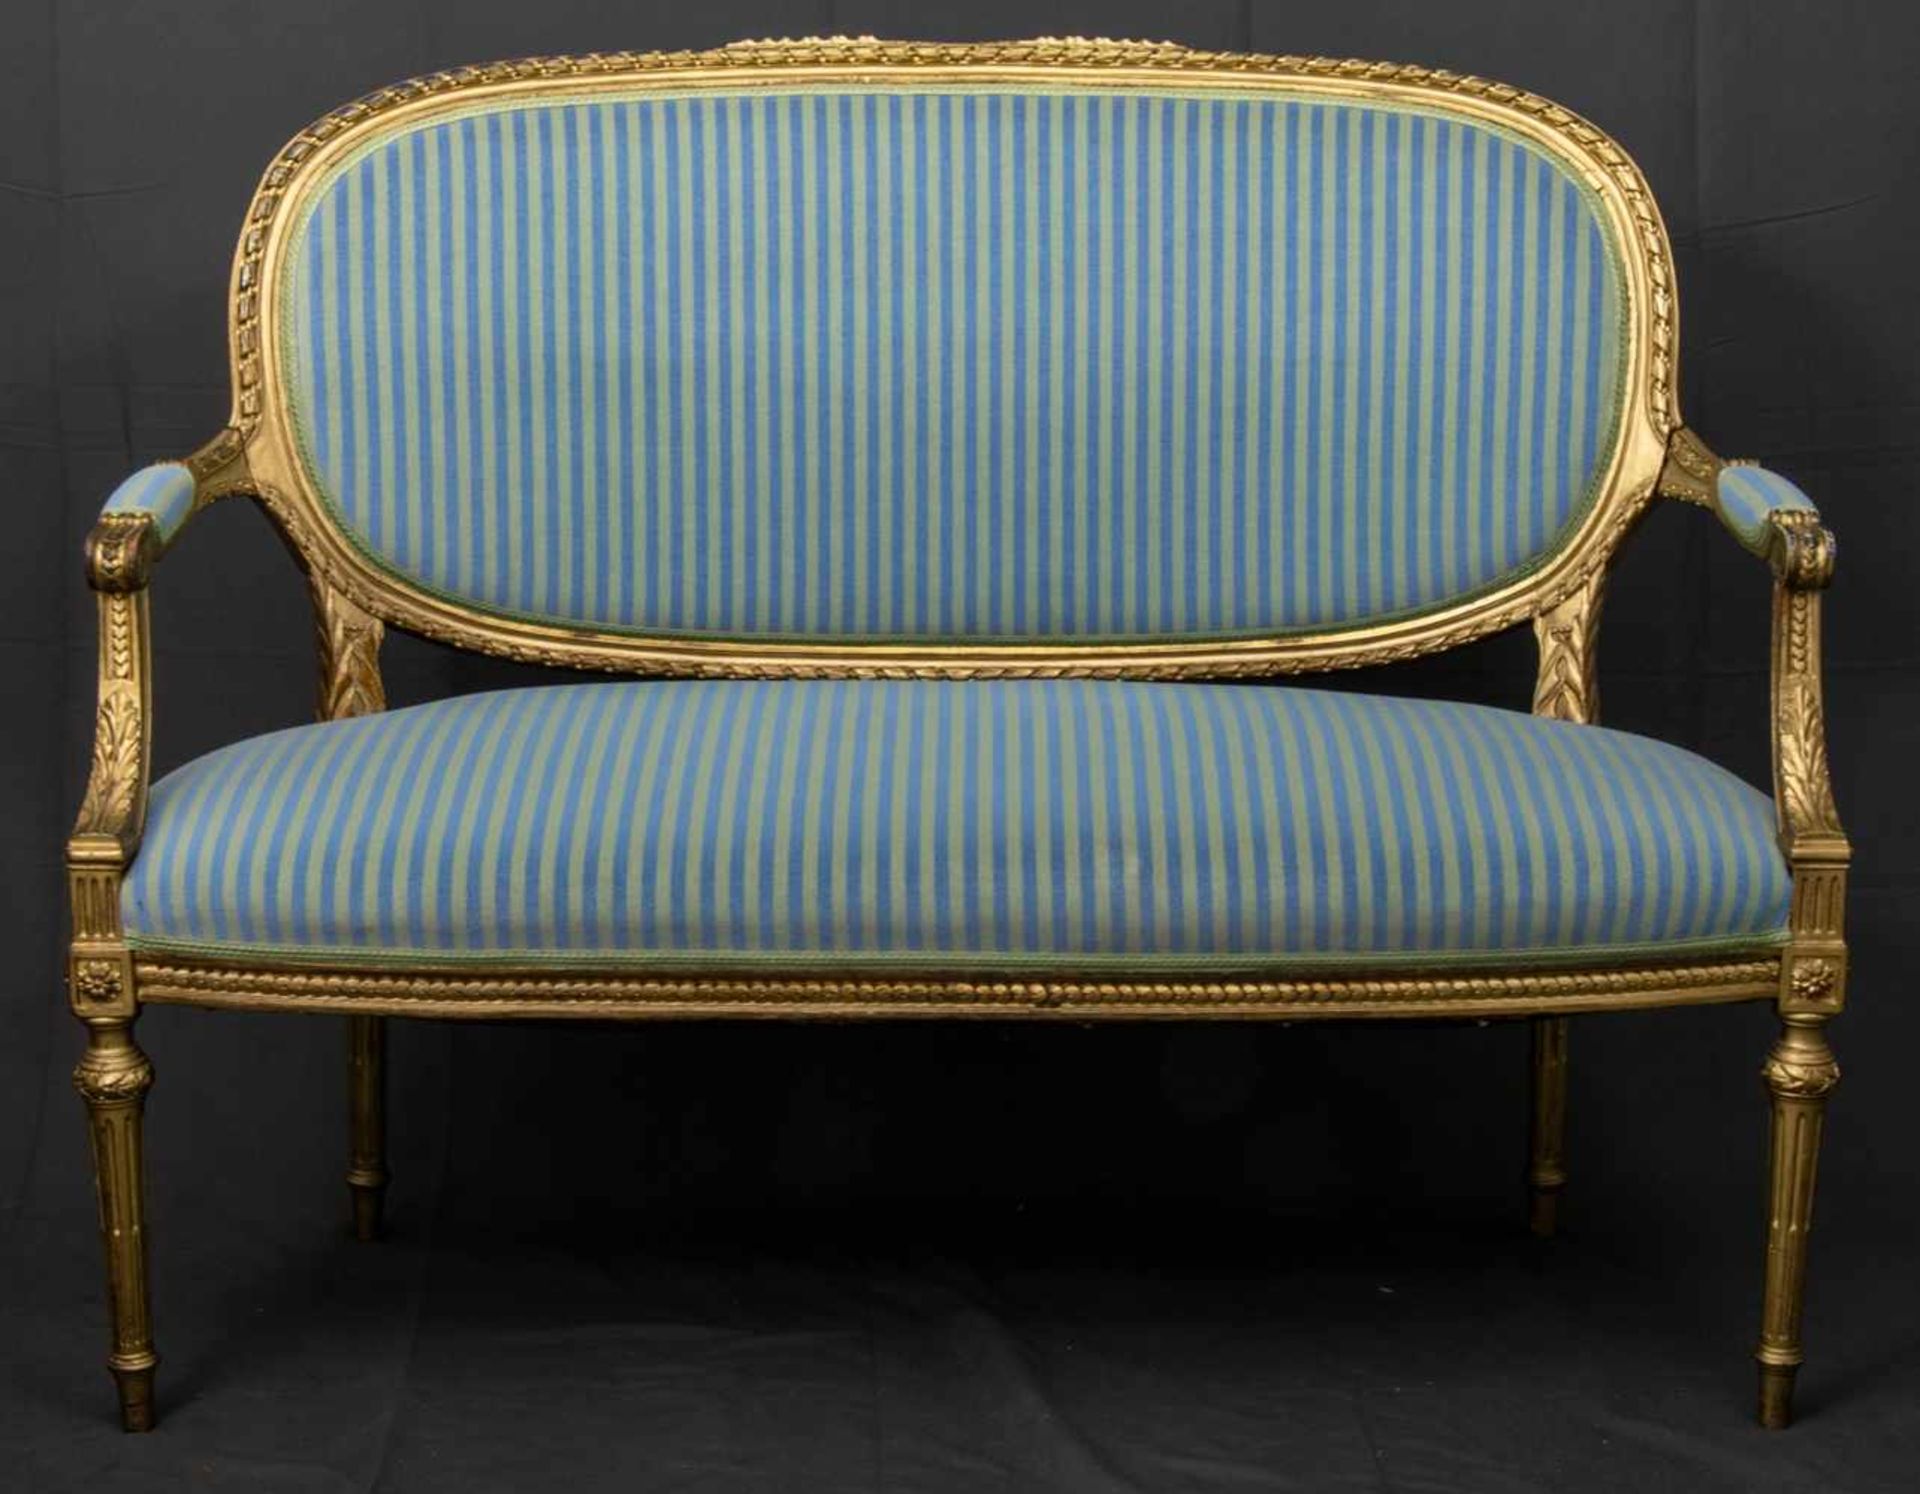 Zweisitzige Polsterbank/Sofa im Louis XVI-Stil, 19./20. Jhd., ältere Restauration, Lehnenhöhe ca. 94